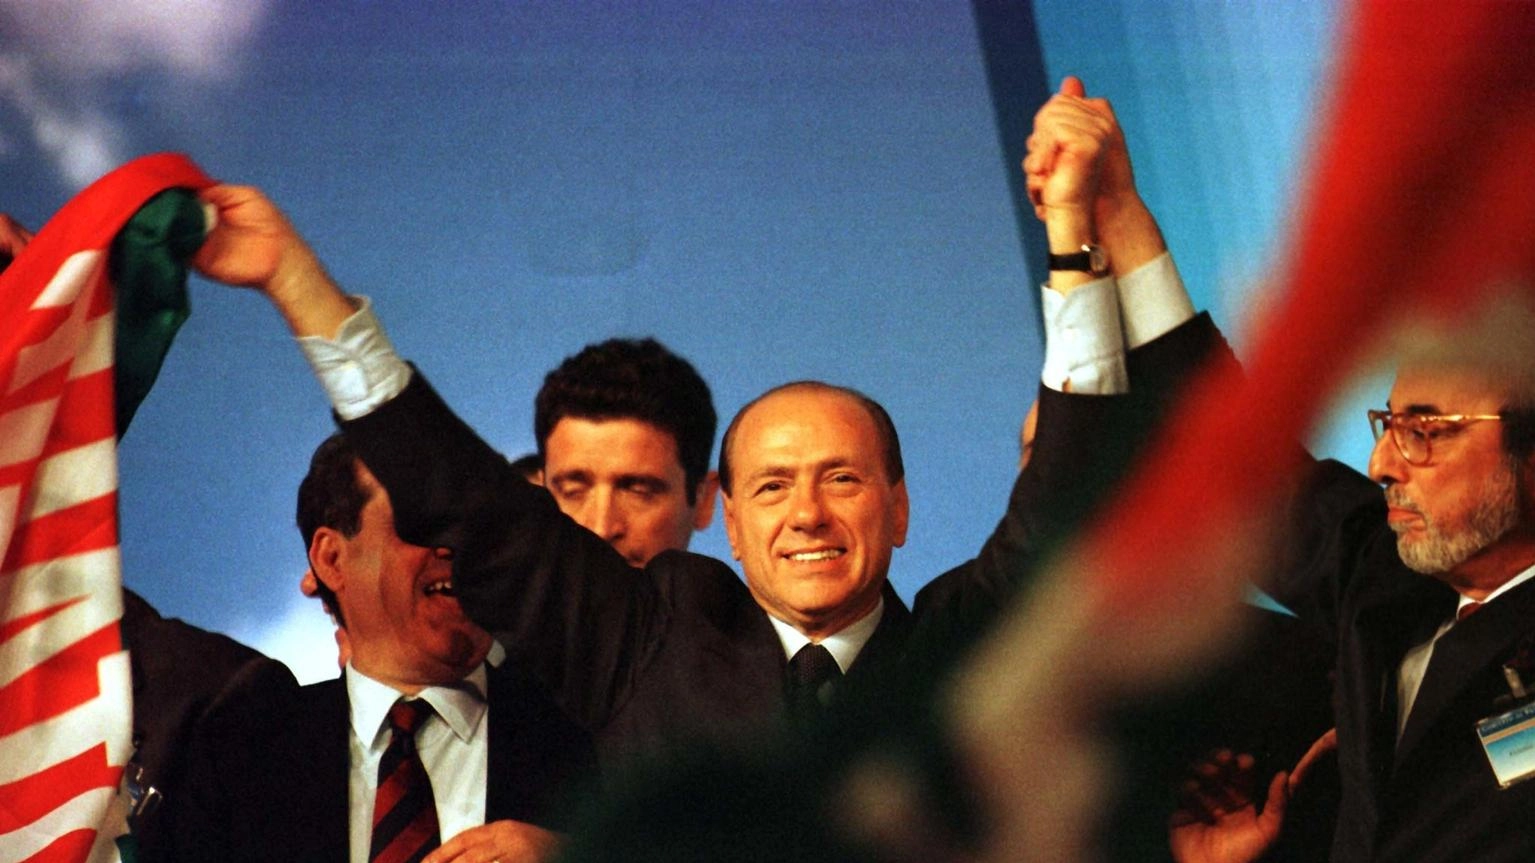 La famiglia Berlusconi vuole continuare a sostenere FI